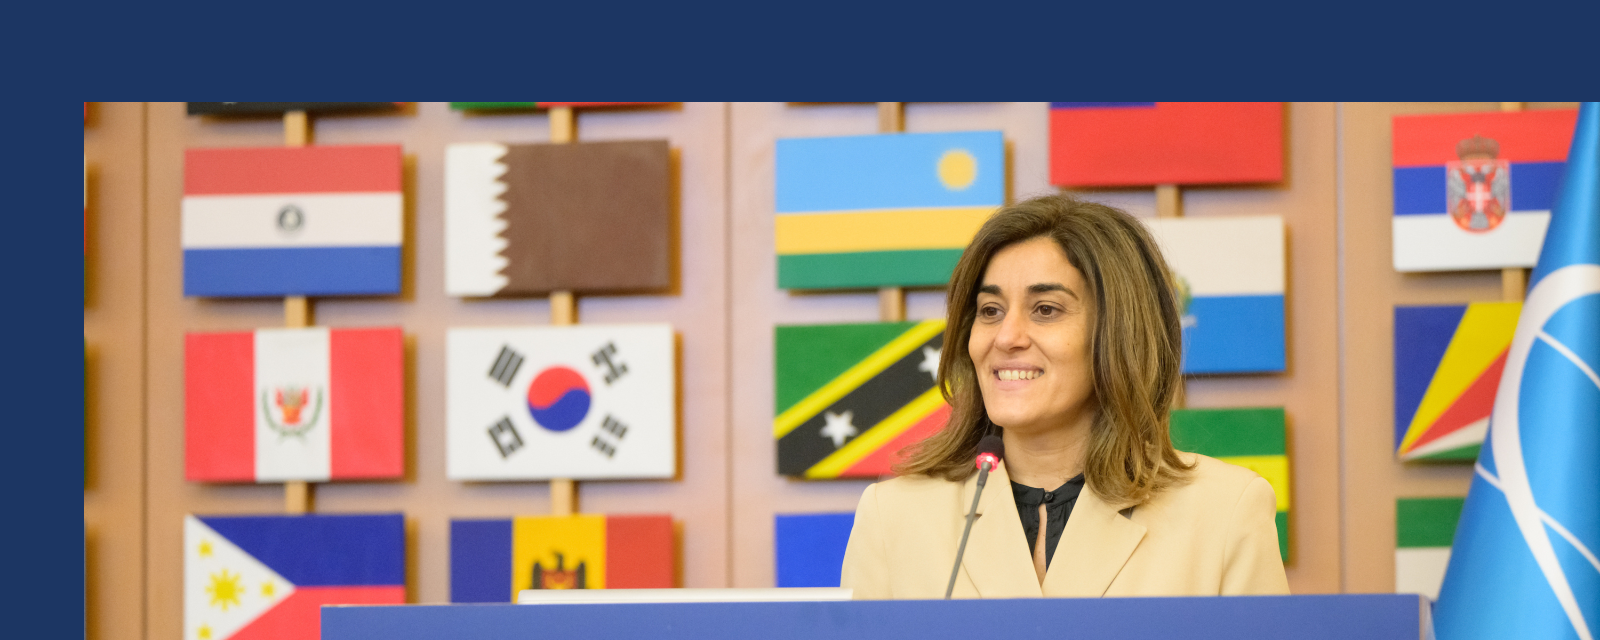 Damos la bienvenida a doña Aruna Francesca Maria Gujral como nueva directora general del ICCROM 